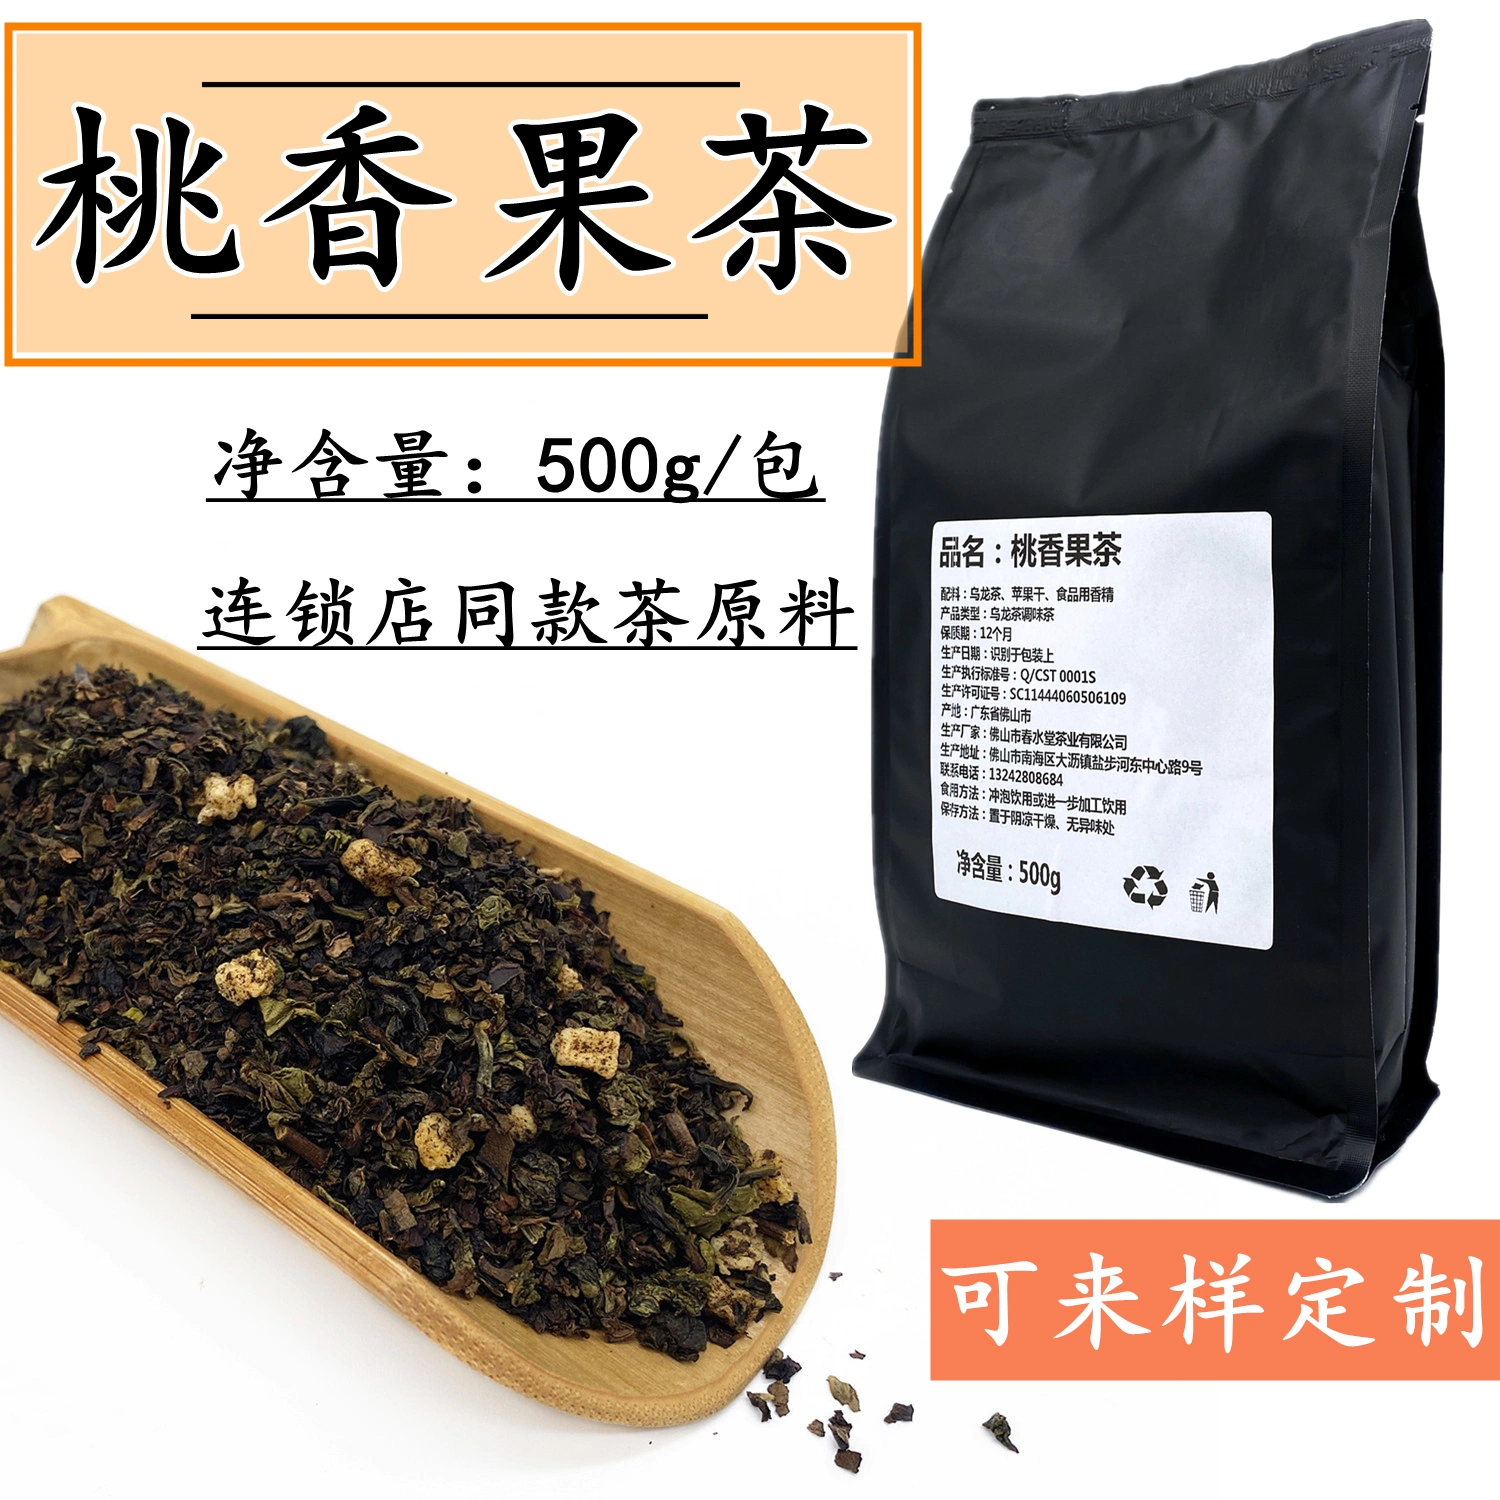 春水堂桃香果茶500g白桃味乌龙茶霸王英歌同款白桃乌龙连锁专用茶-Taobao